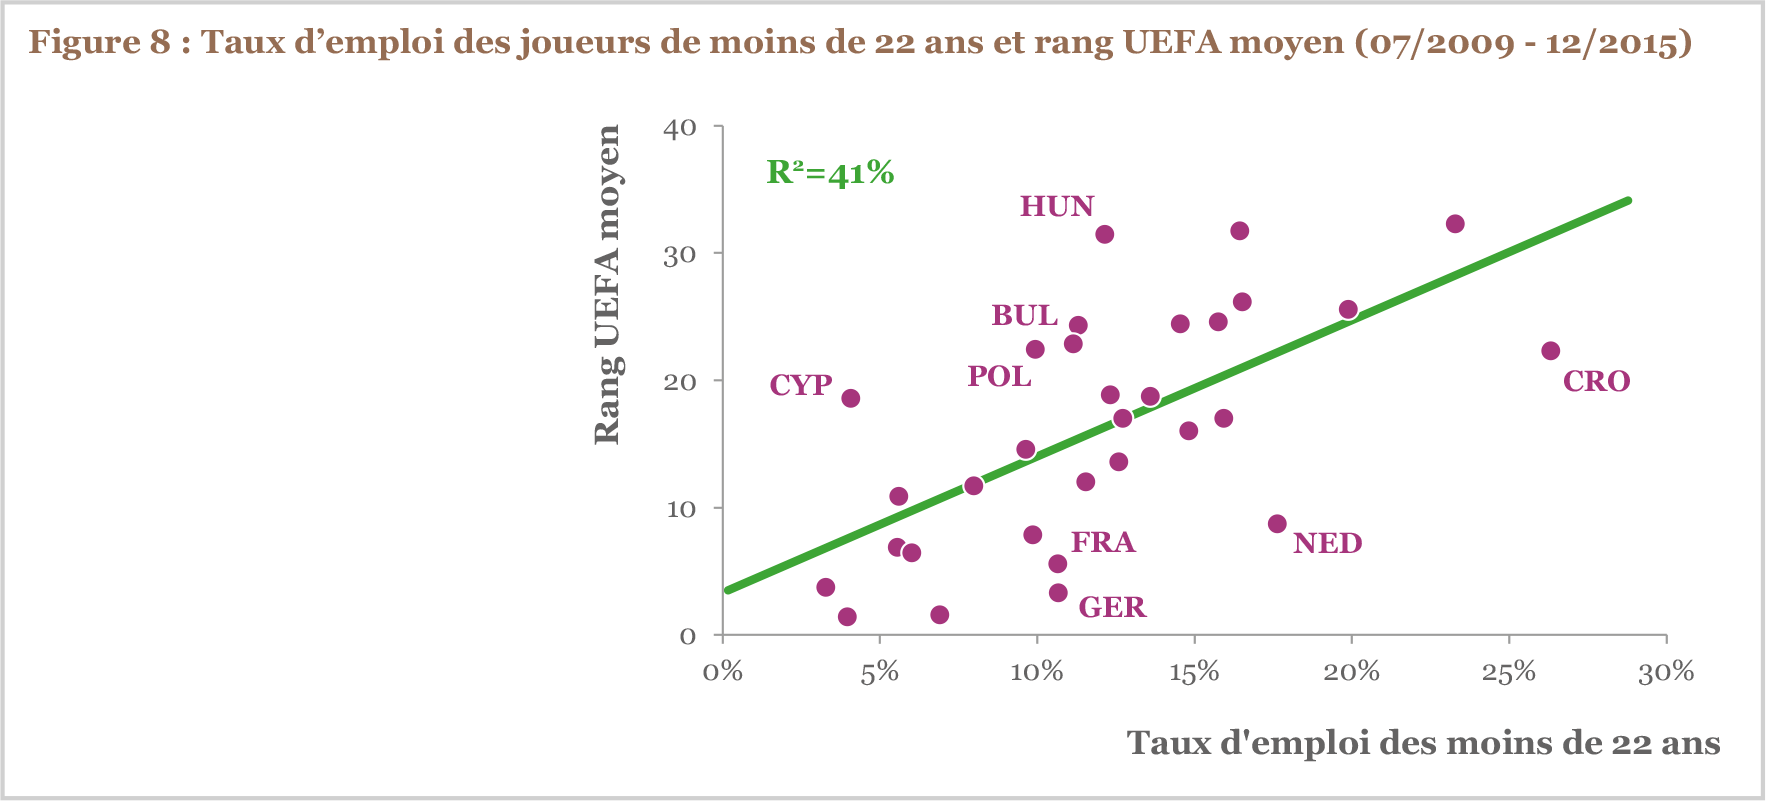 Taux d’emploi des joueurs de moins de 22 ans et rang UEFA moyen (07/2009 - 12/2015)